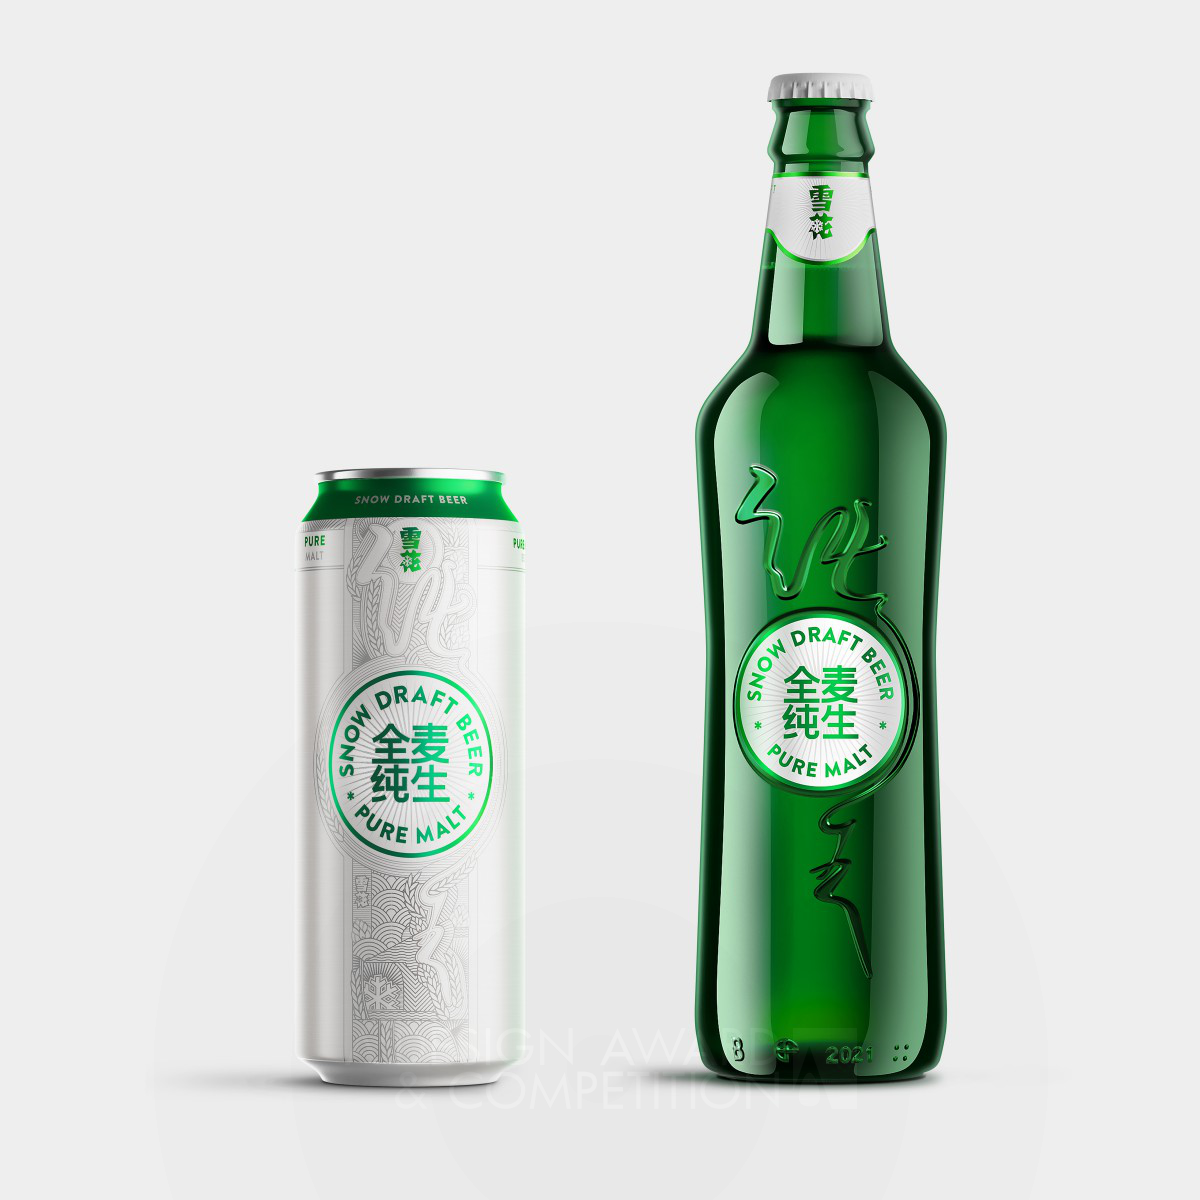 Snow Draft Beer <b>Packaging